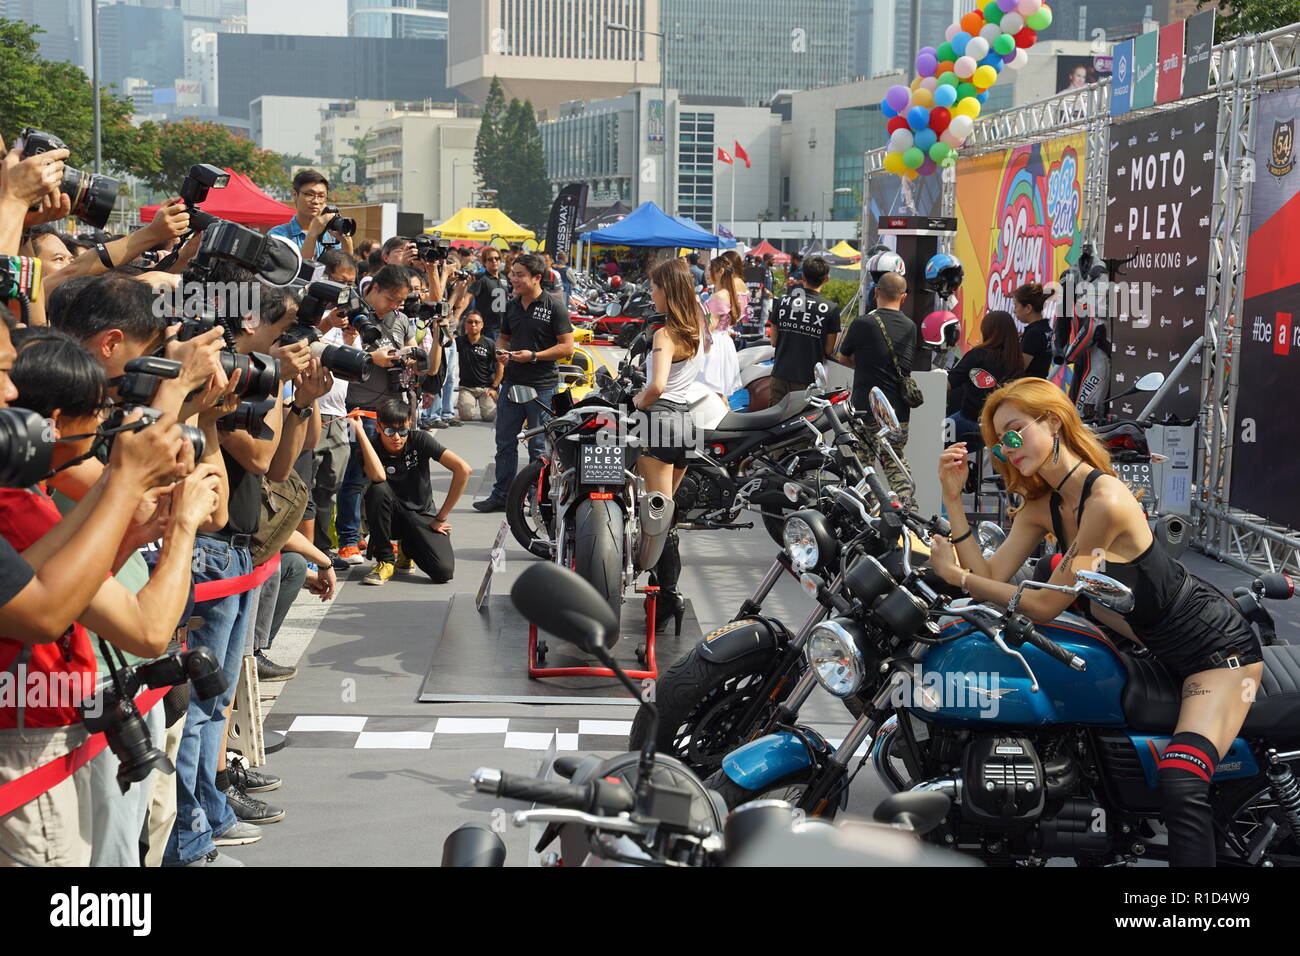 Un modello di moto MotoGuzzi pone di fronte ai fotografi a Motorcycle Show 2018 presso la centrale di Hong Kong. Il "MOTOCICLO SHOW' nel centro di HONG KONG si tiene ogni anno nel mese di ottobre o novembre. Si tratta di una mostra dedicata a tutte le forme di 2 ruote di divertimento con il club, negozi, importatori, dipartimenti governativi visualizzando le loro moto in una atmosfera di carnevale. Foto Stock